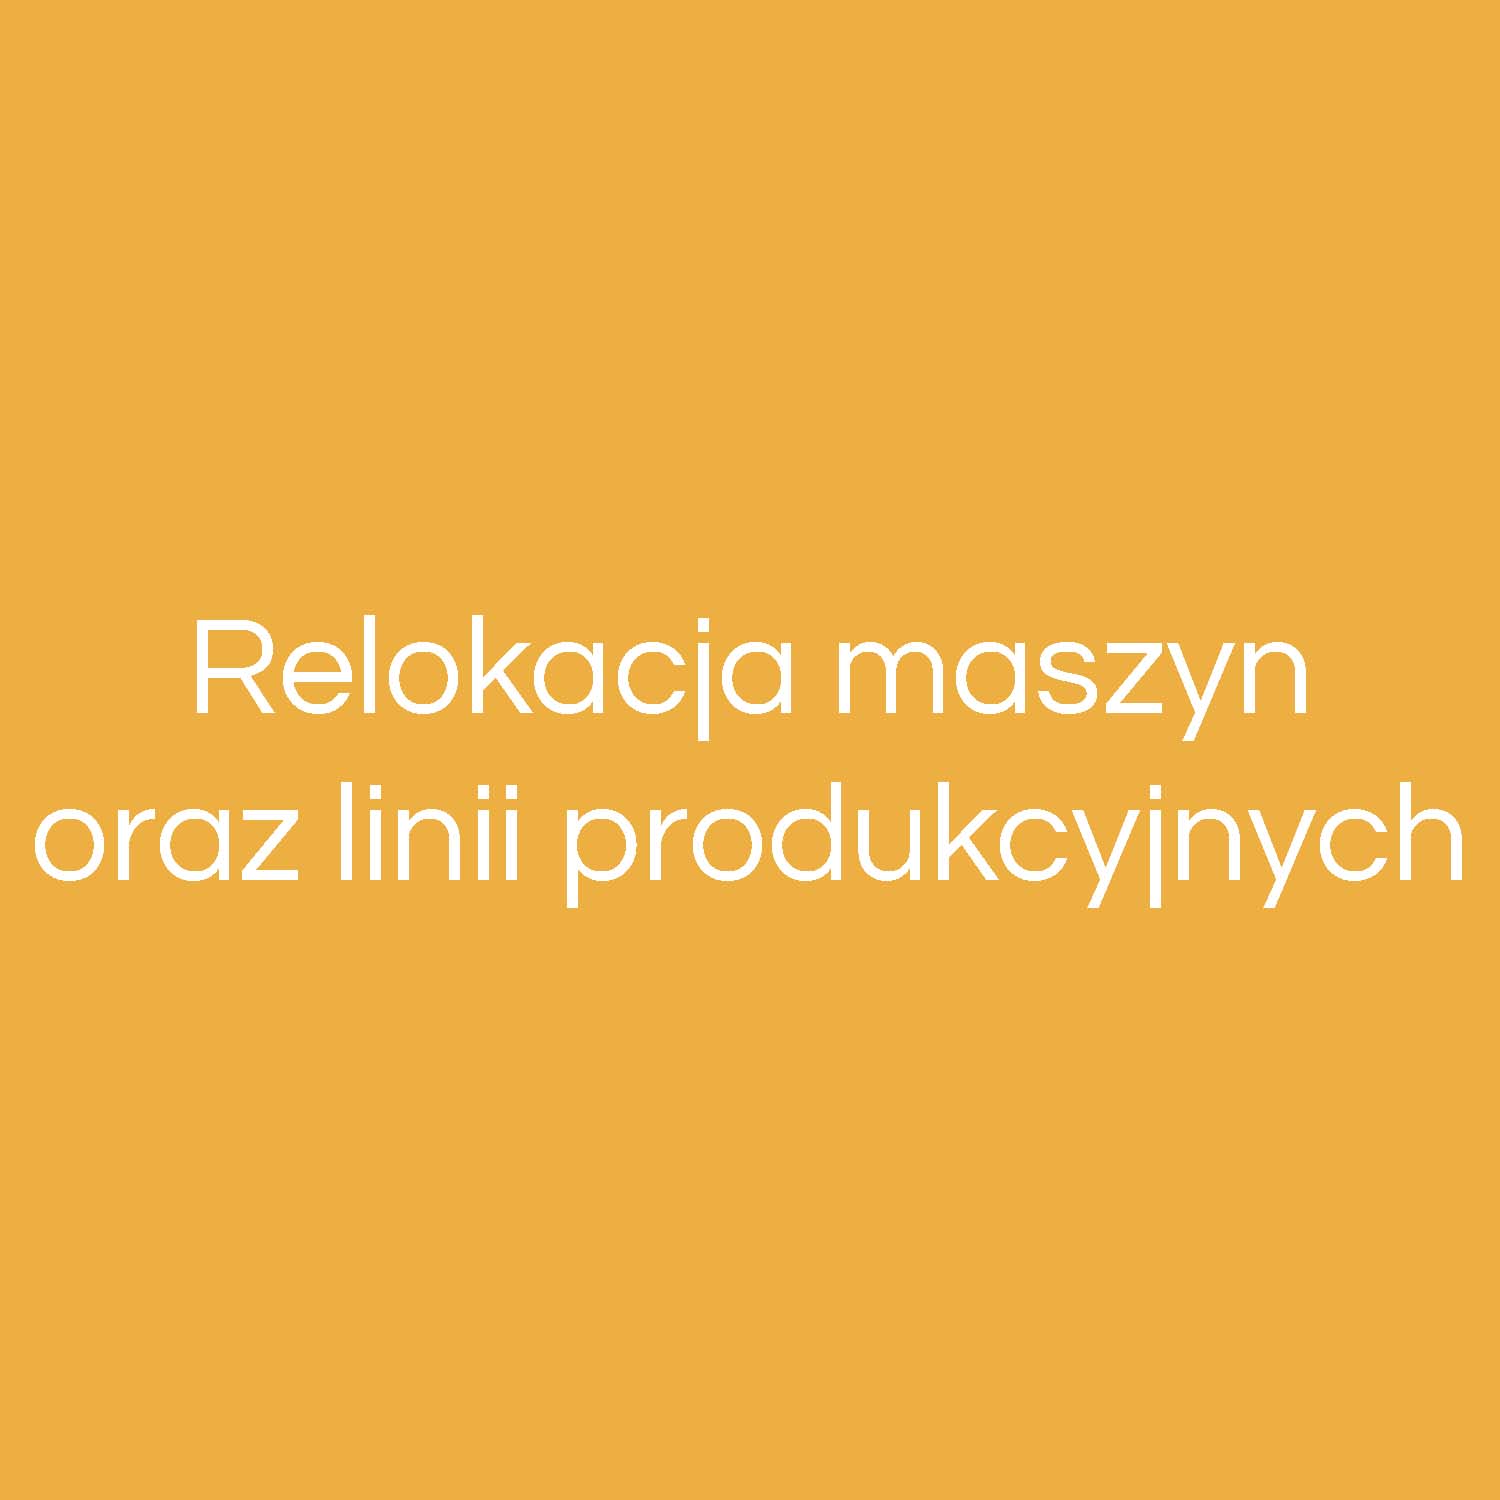 Relokacja maszyn oraz linii produkcyjnych Lubliniec